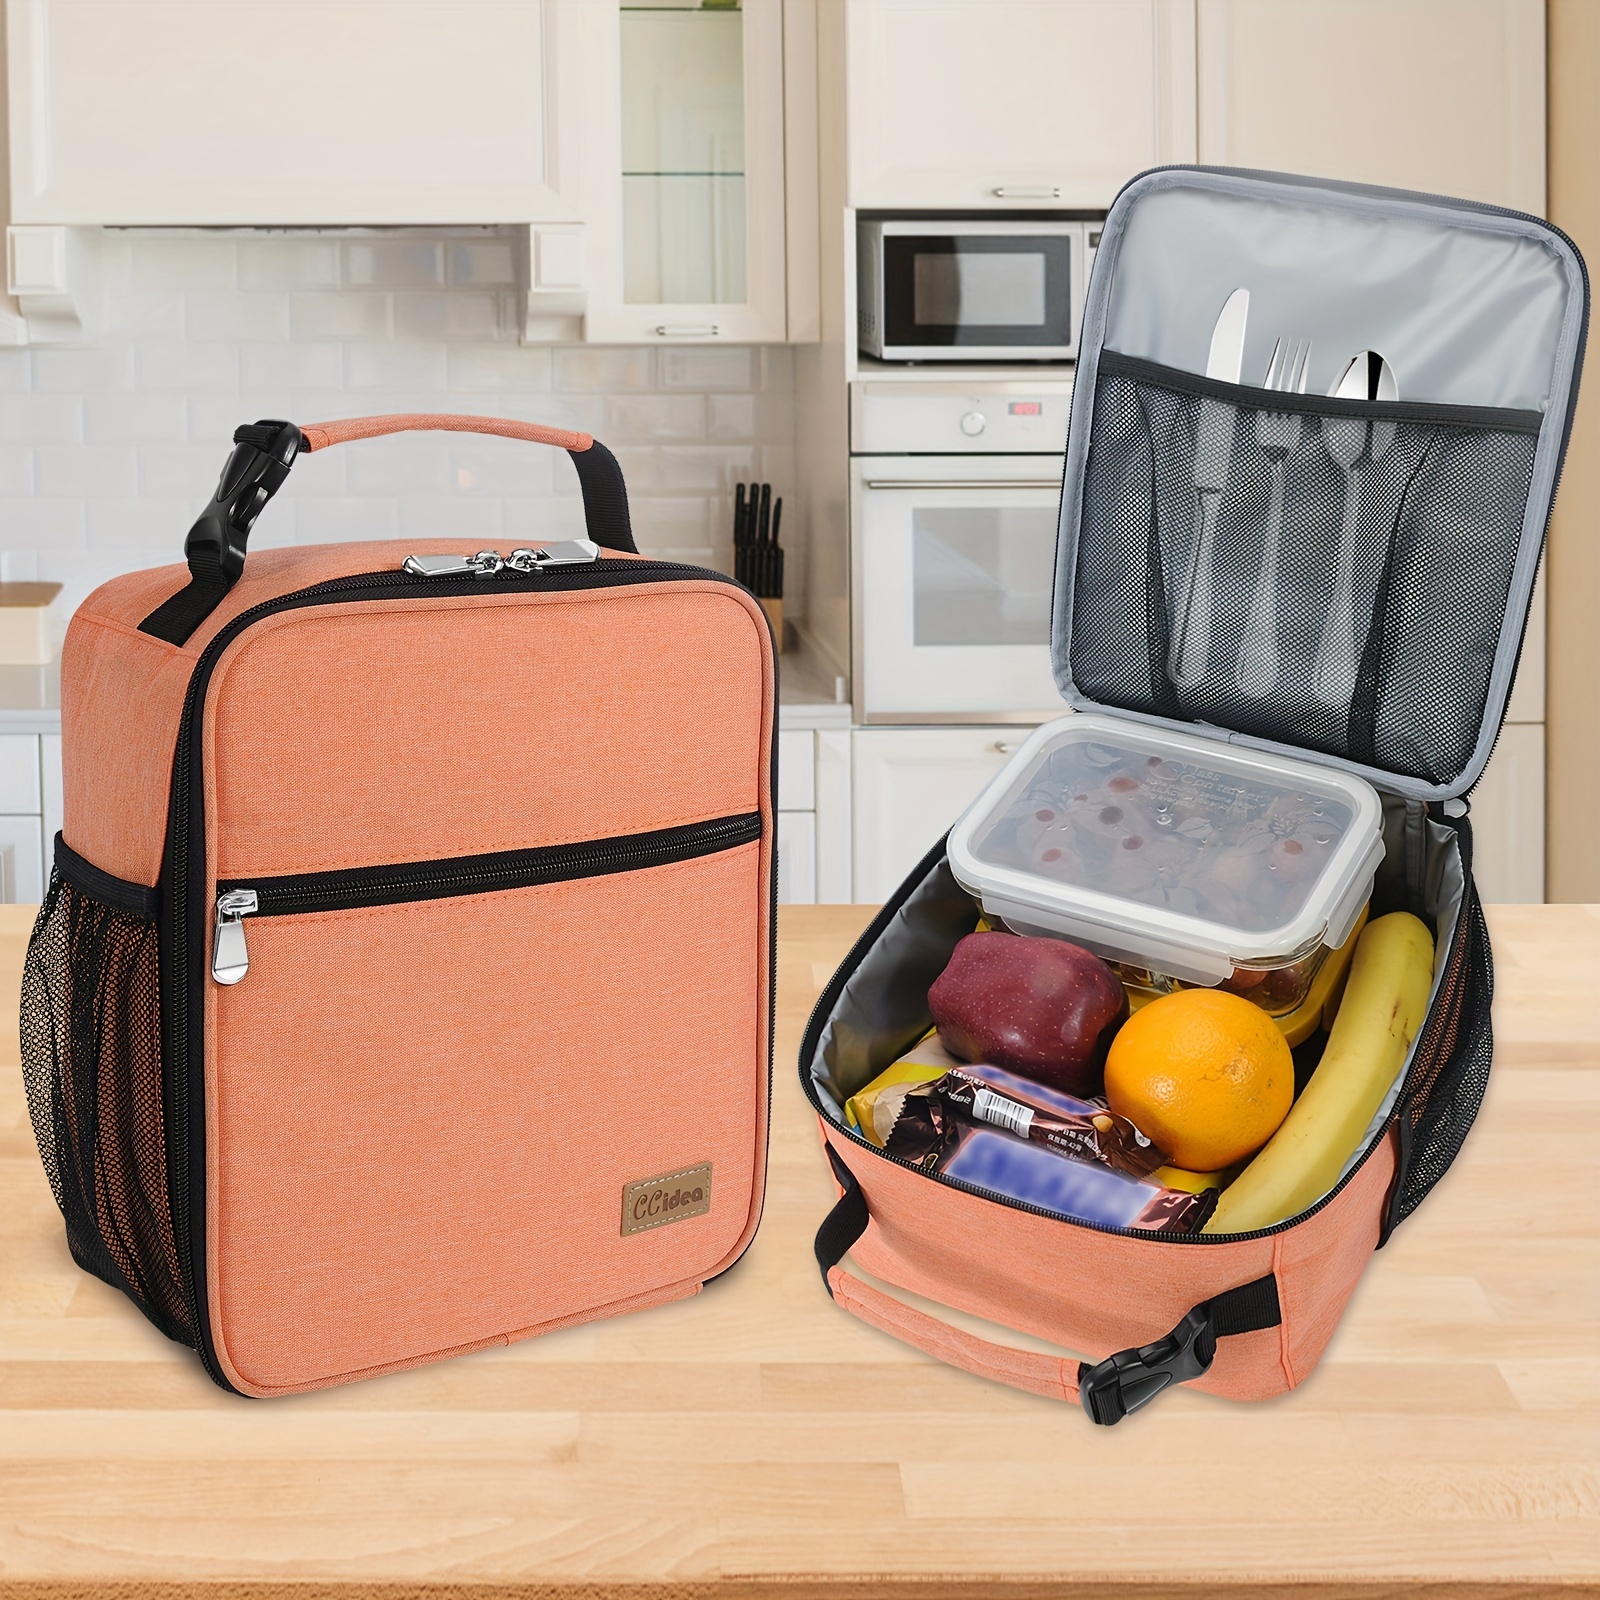 Mitad 'tupper', mitad bolsa zip: el invento definitivo para llevar la comida  al trabajo sin manchar bolsos o mochilas